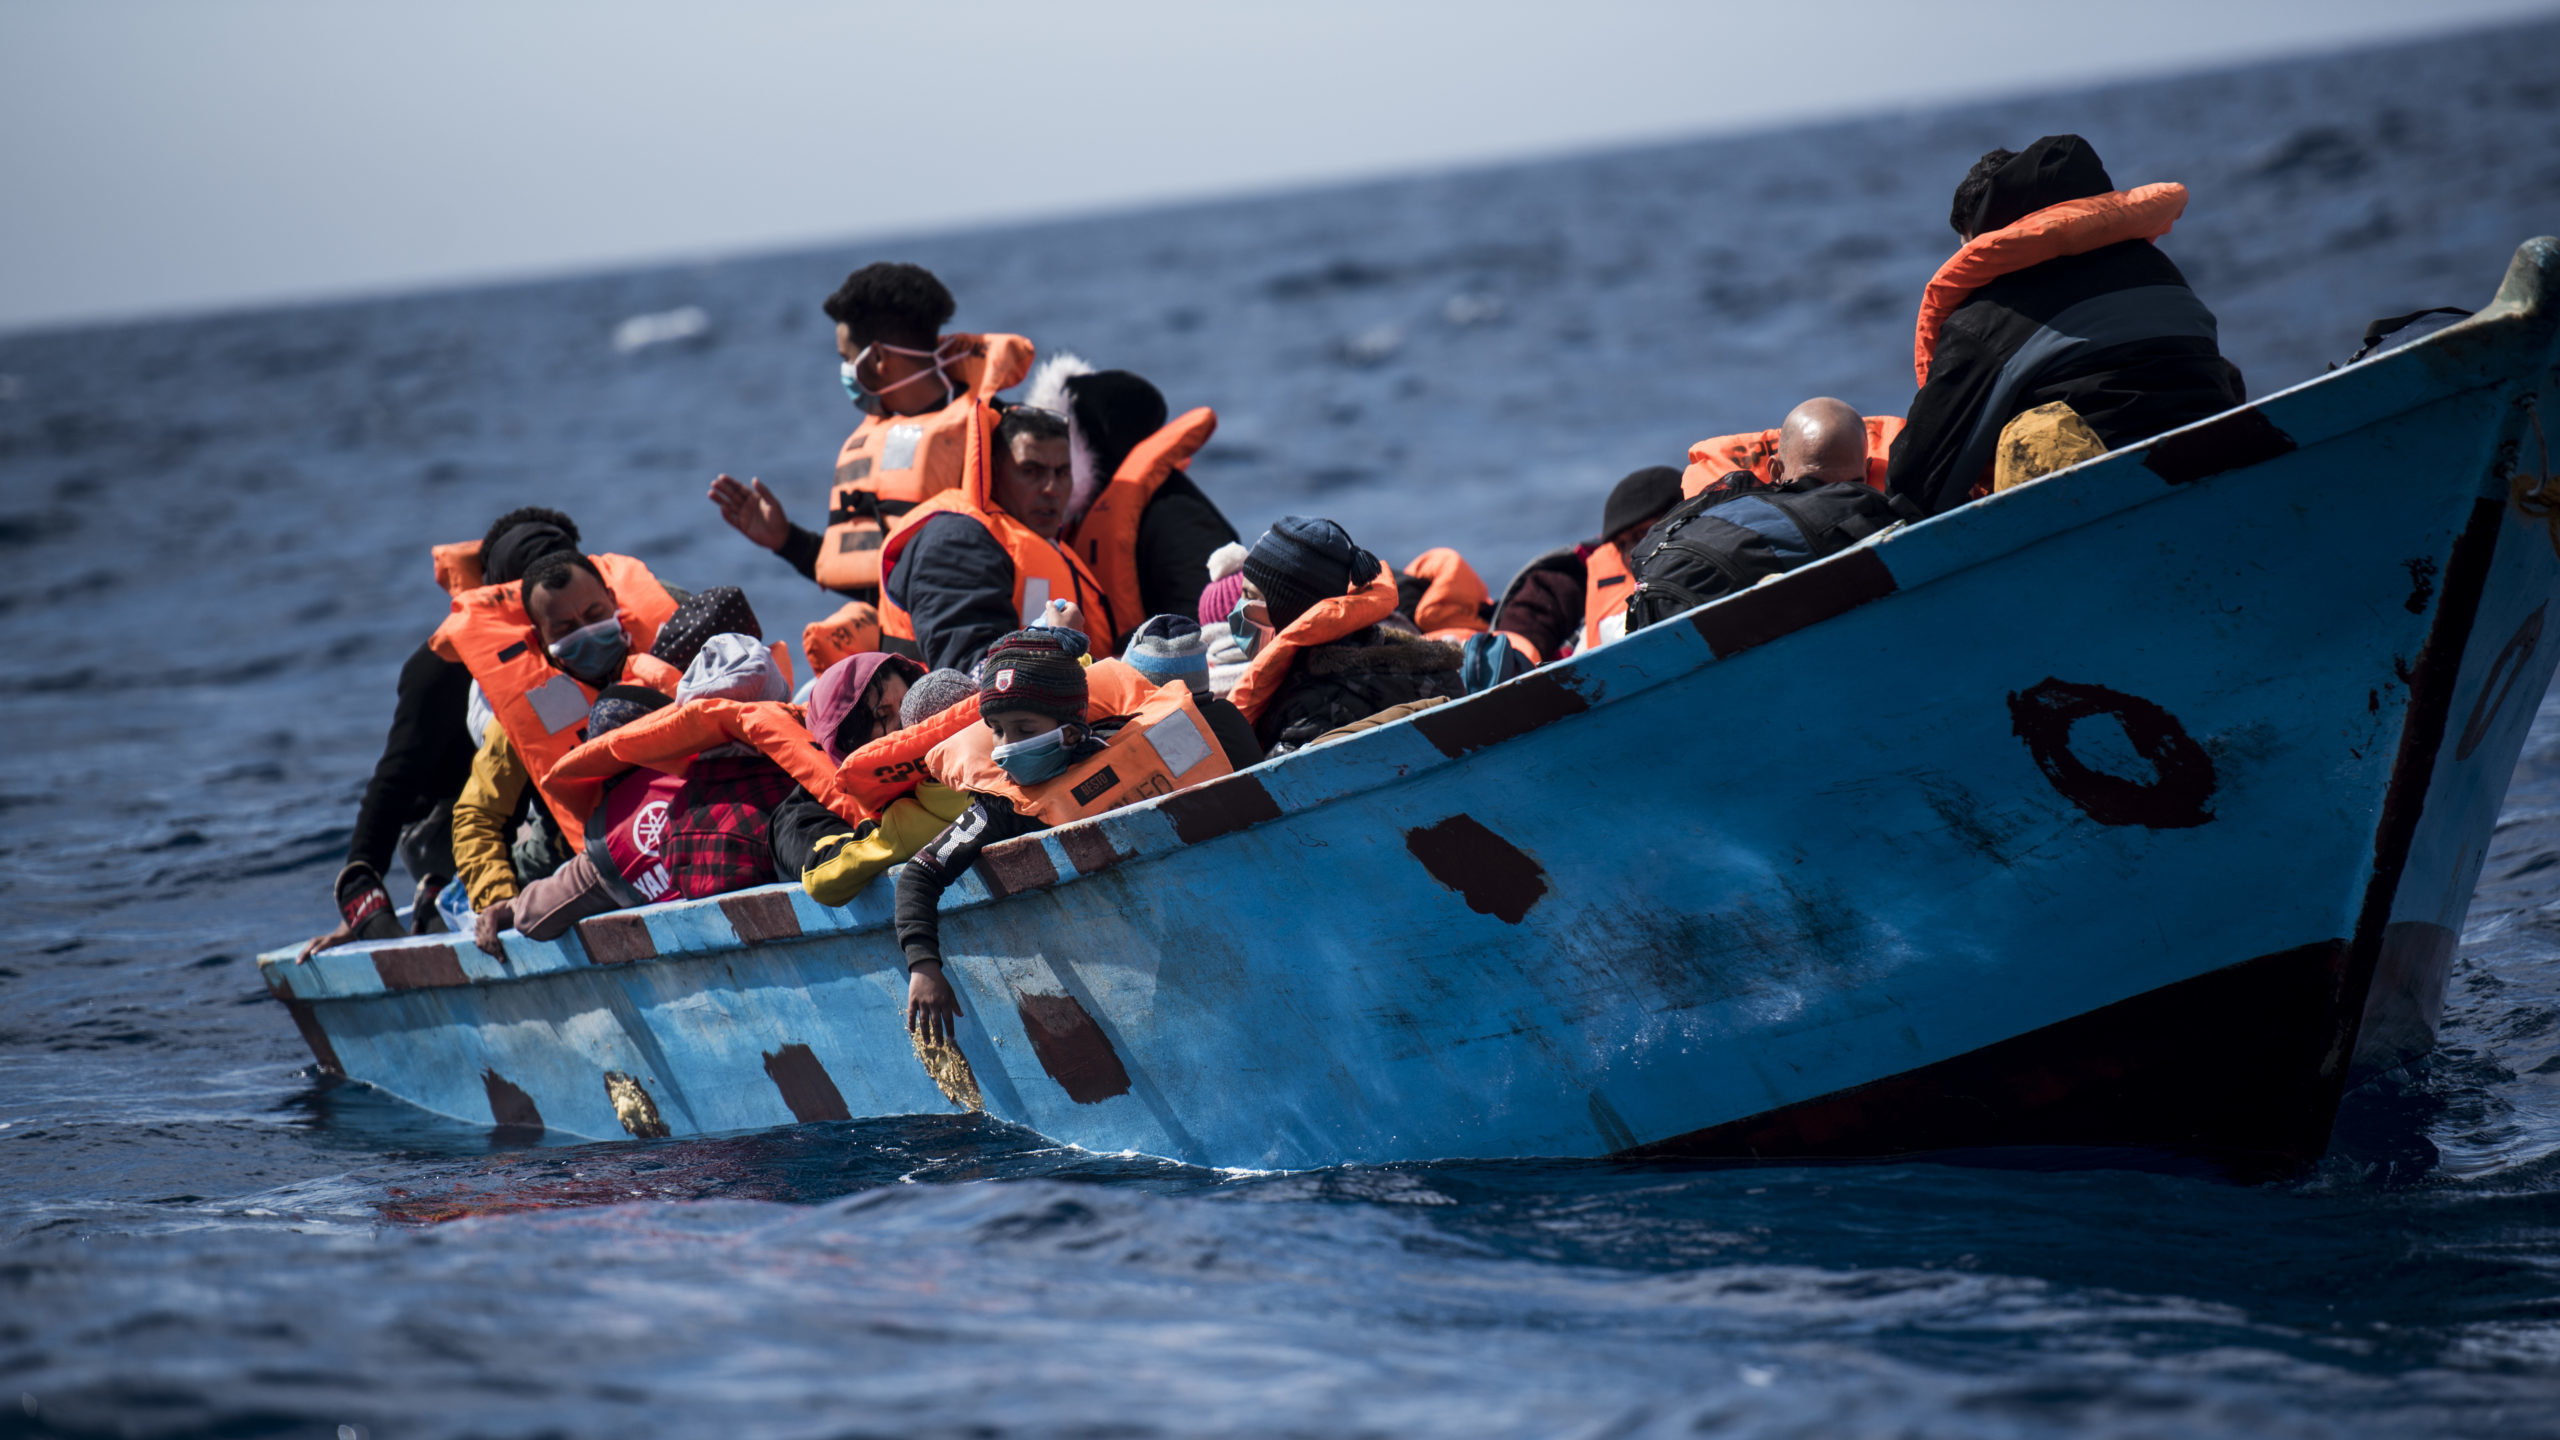 5 Die in Shipwreck off Libya